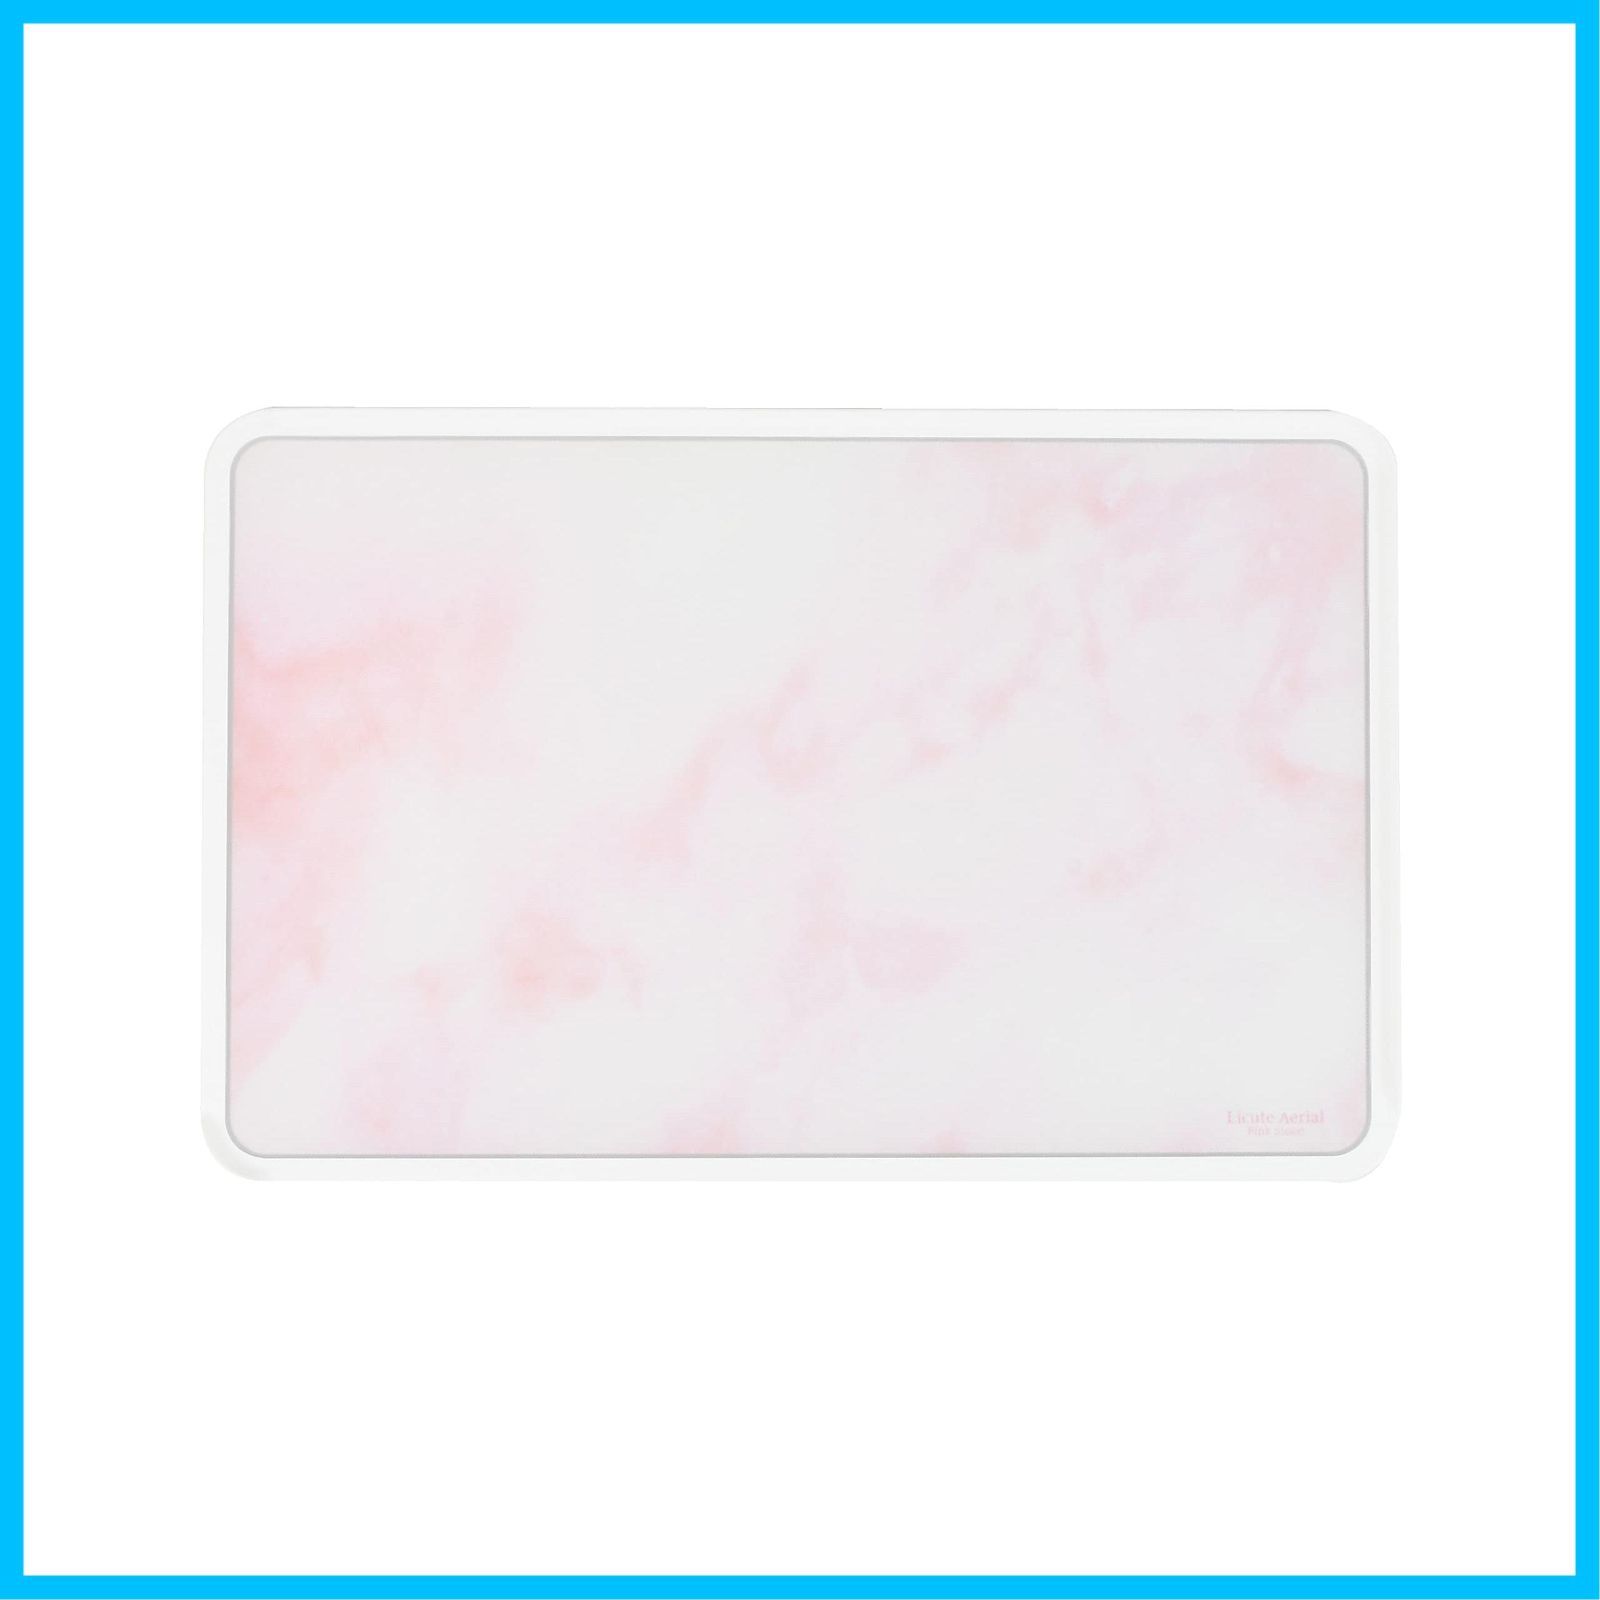 【特売セール】パール金属 Licute Aerial まな板 ピンクストーン Pink Stone 日本製 食洗機対応 CC-1403